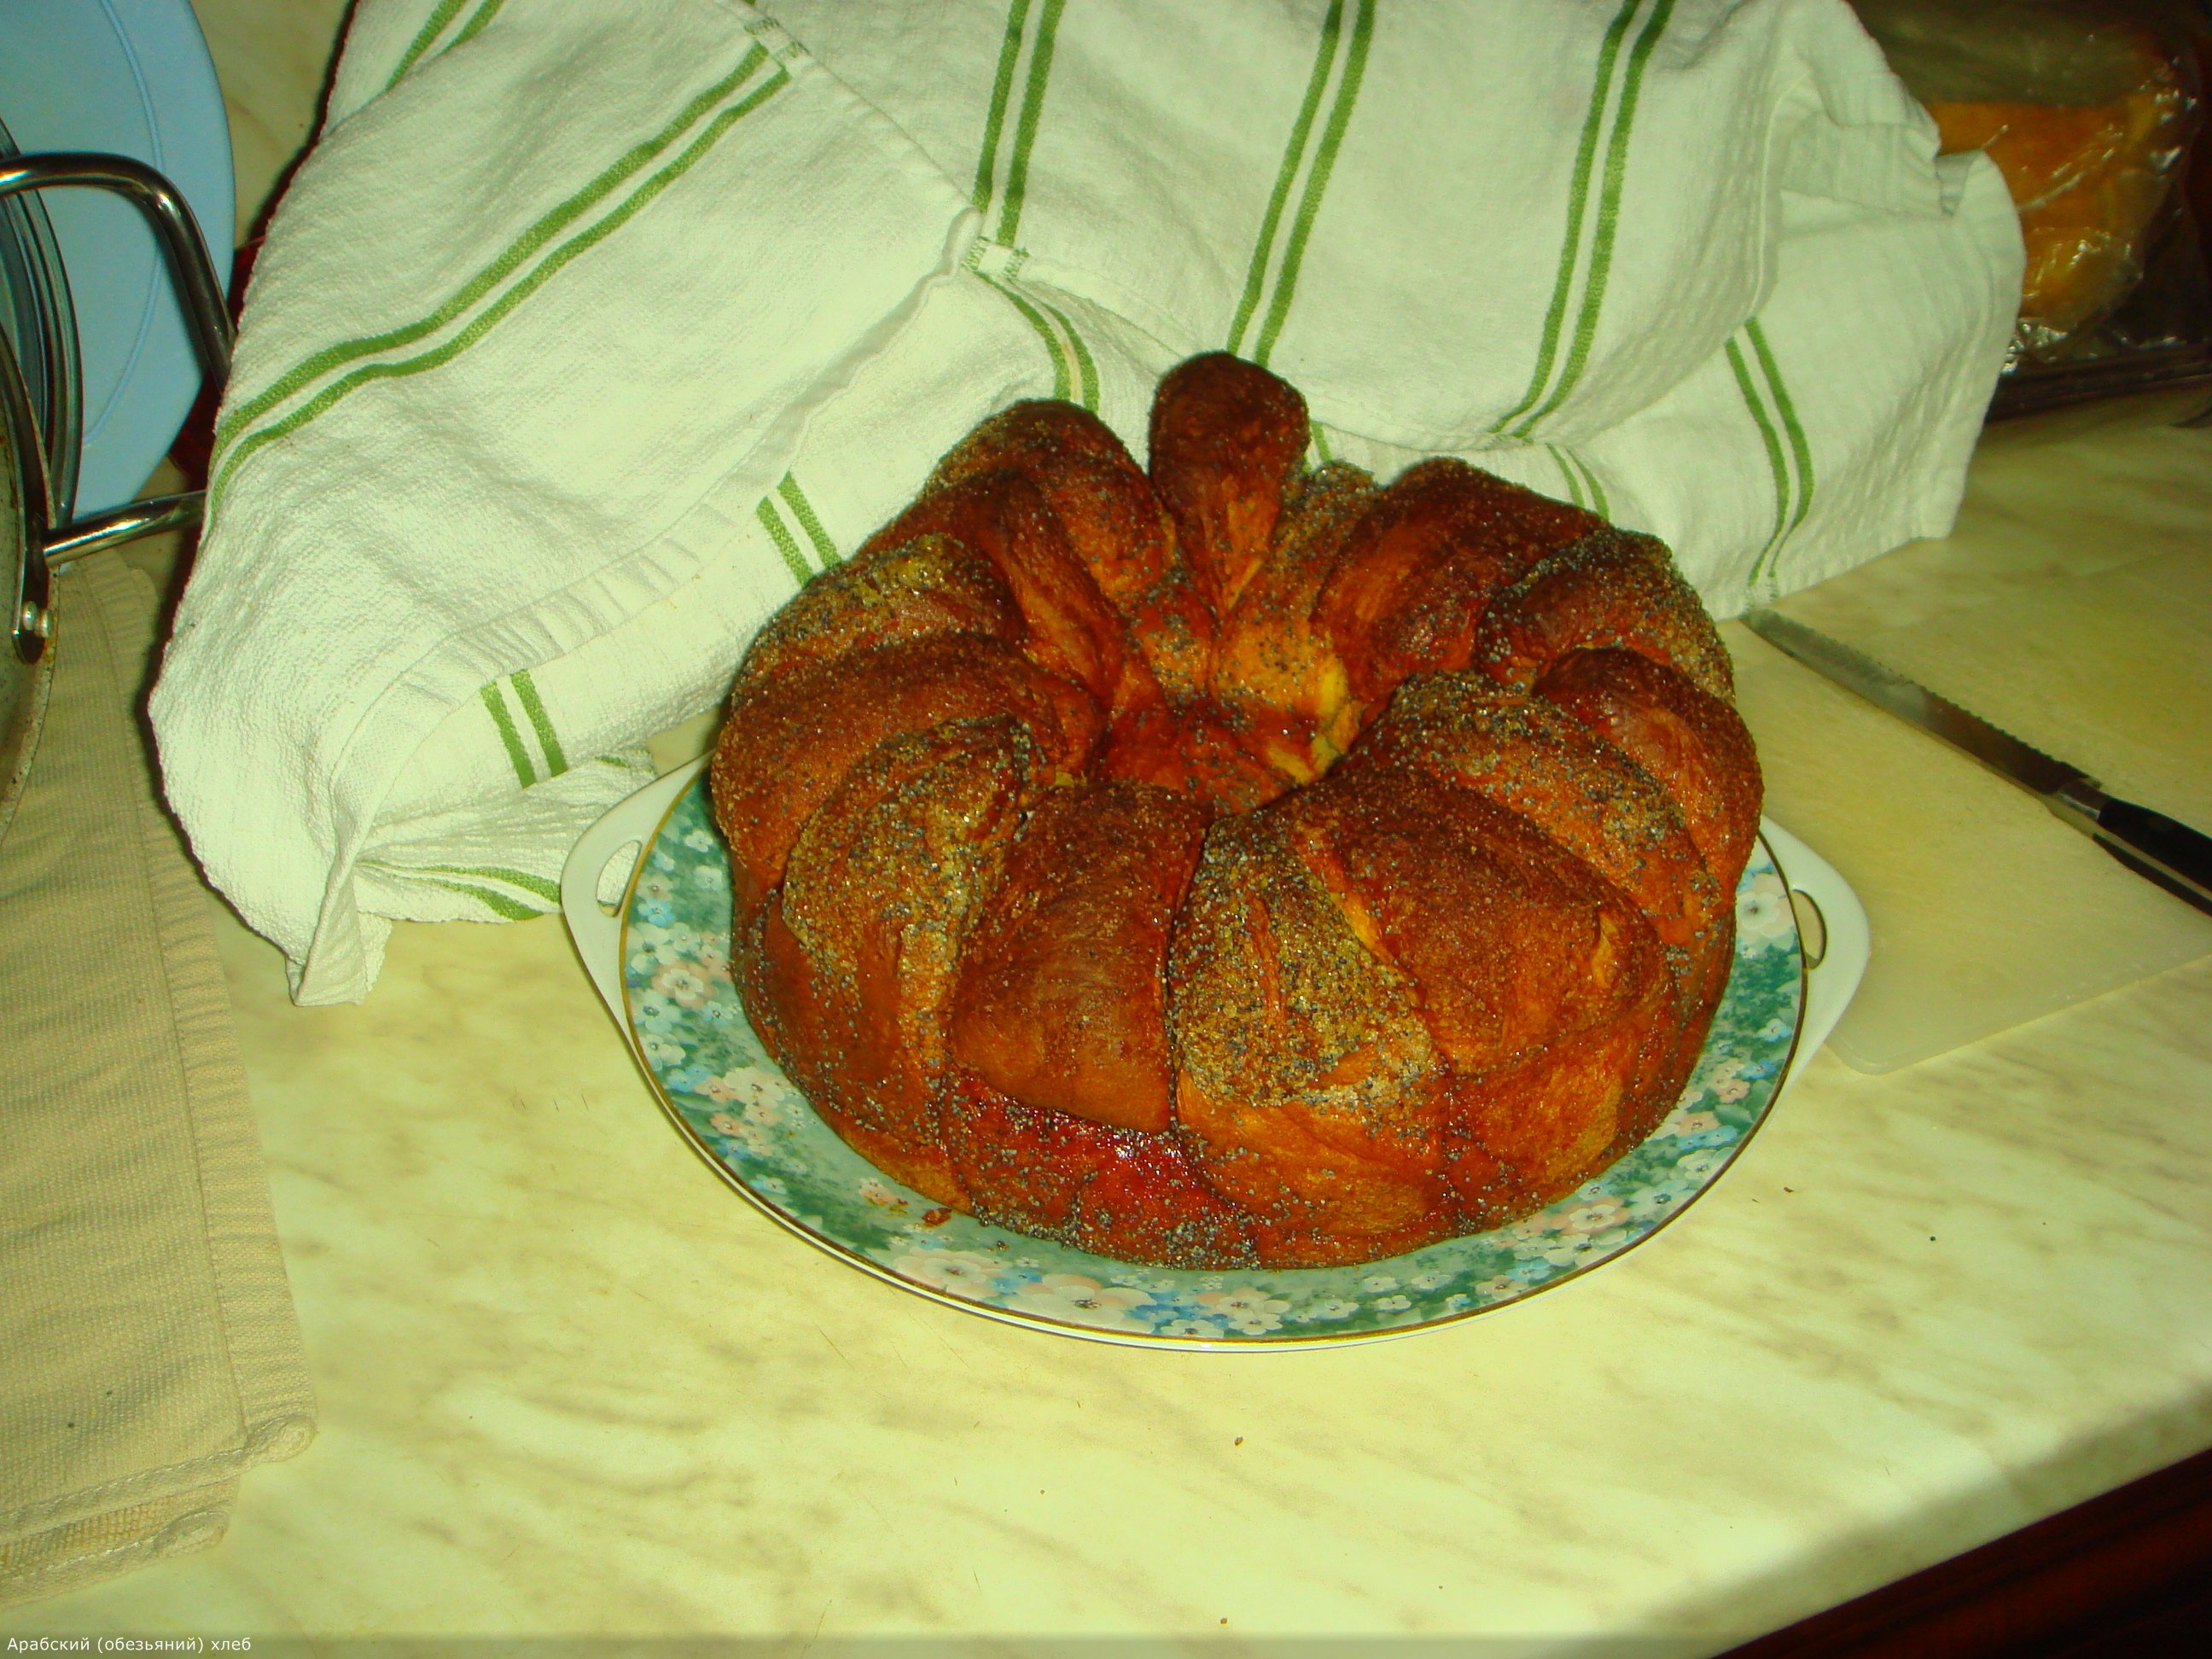 Sweet Arabic bread (bread maker)